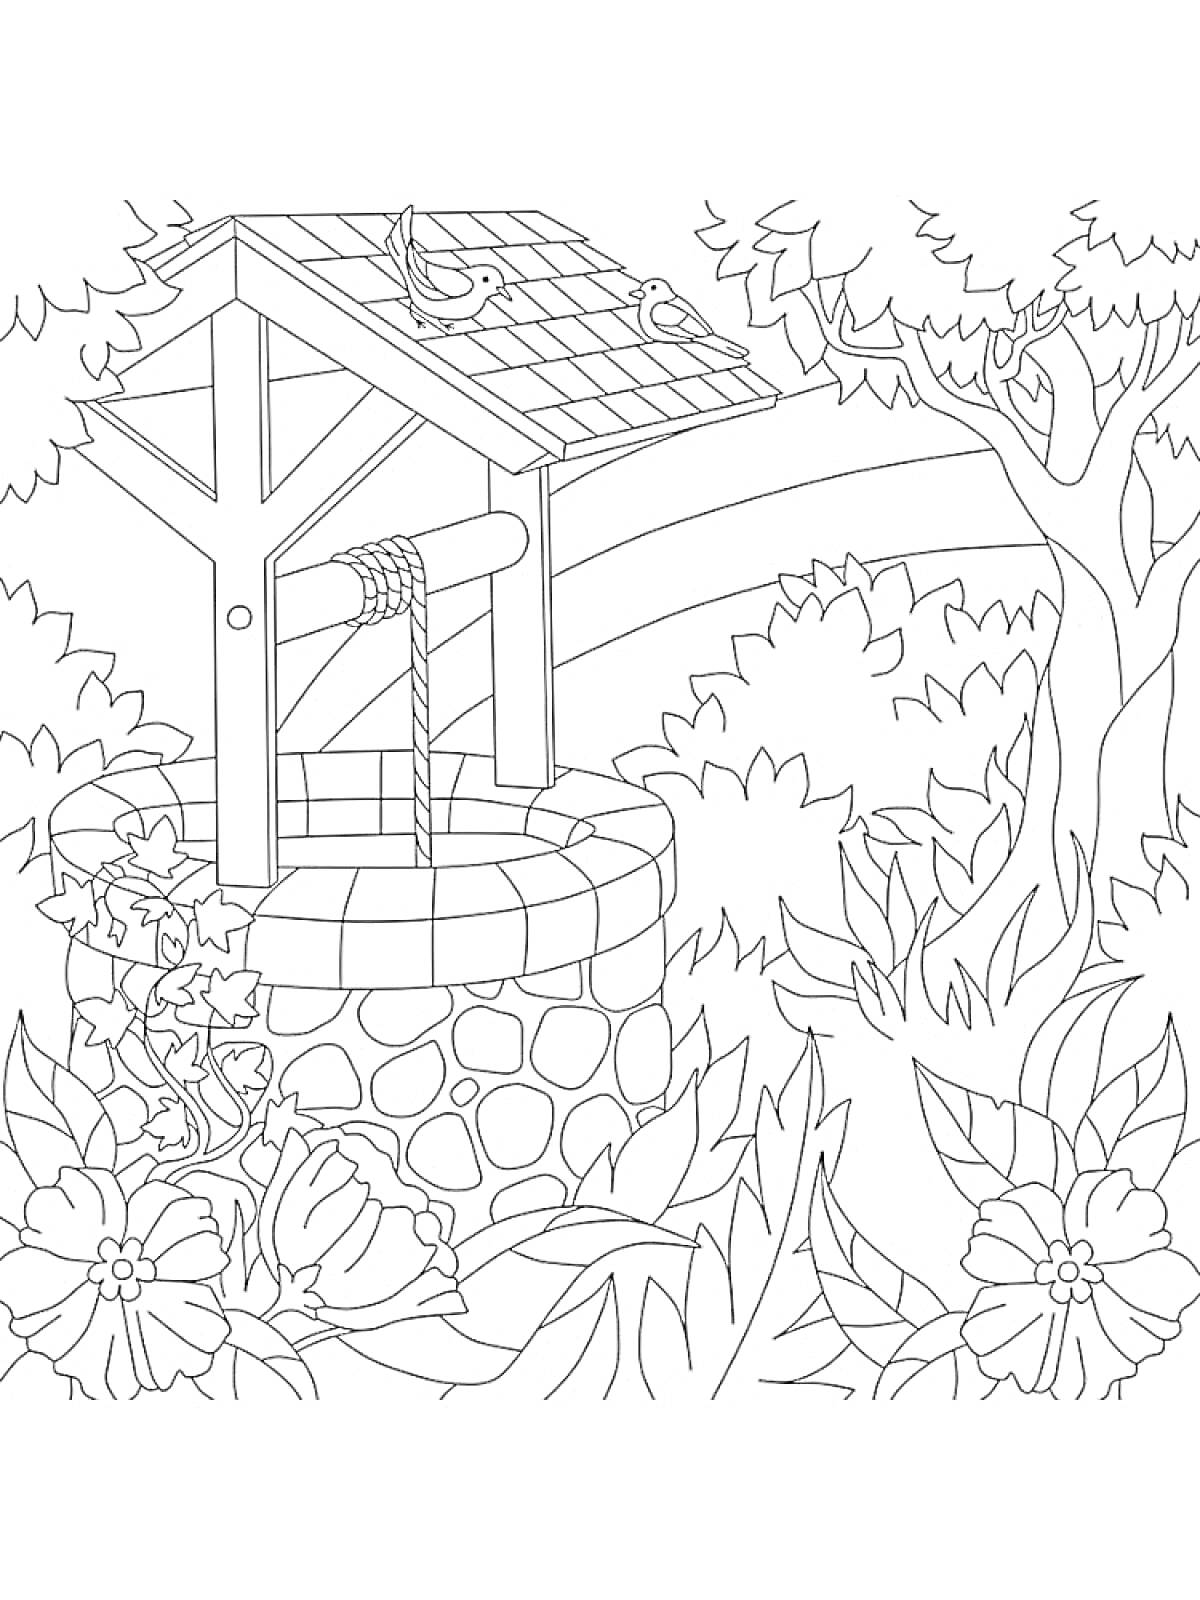 Колодец с крышей, ведром и рукояткой, окружённый цветами и растительностью